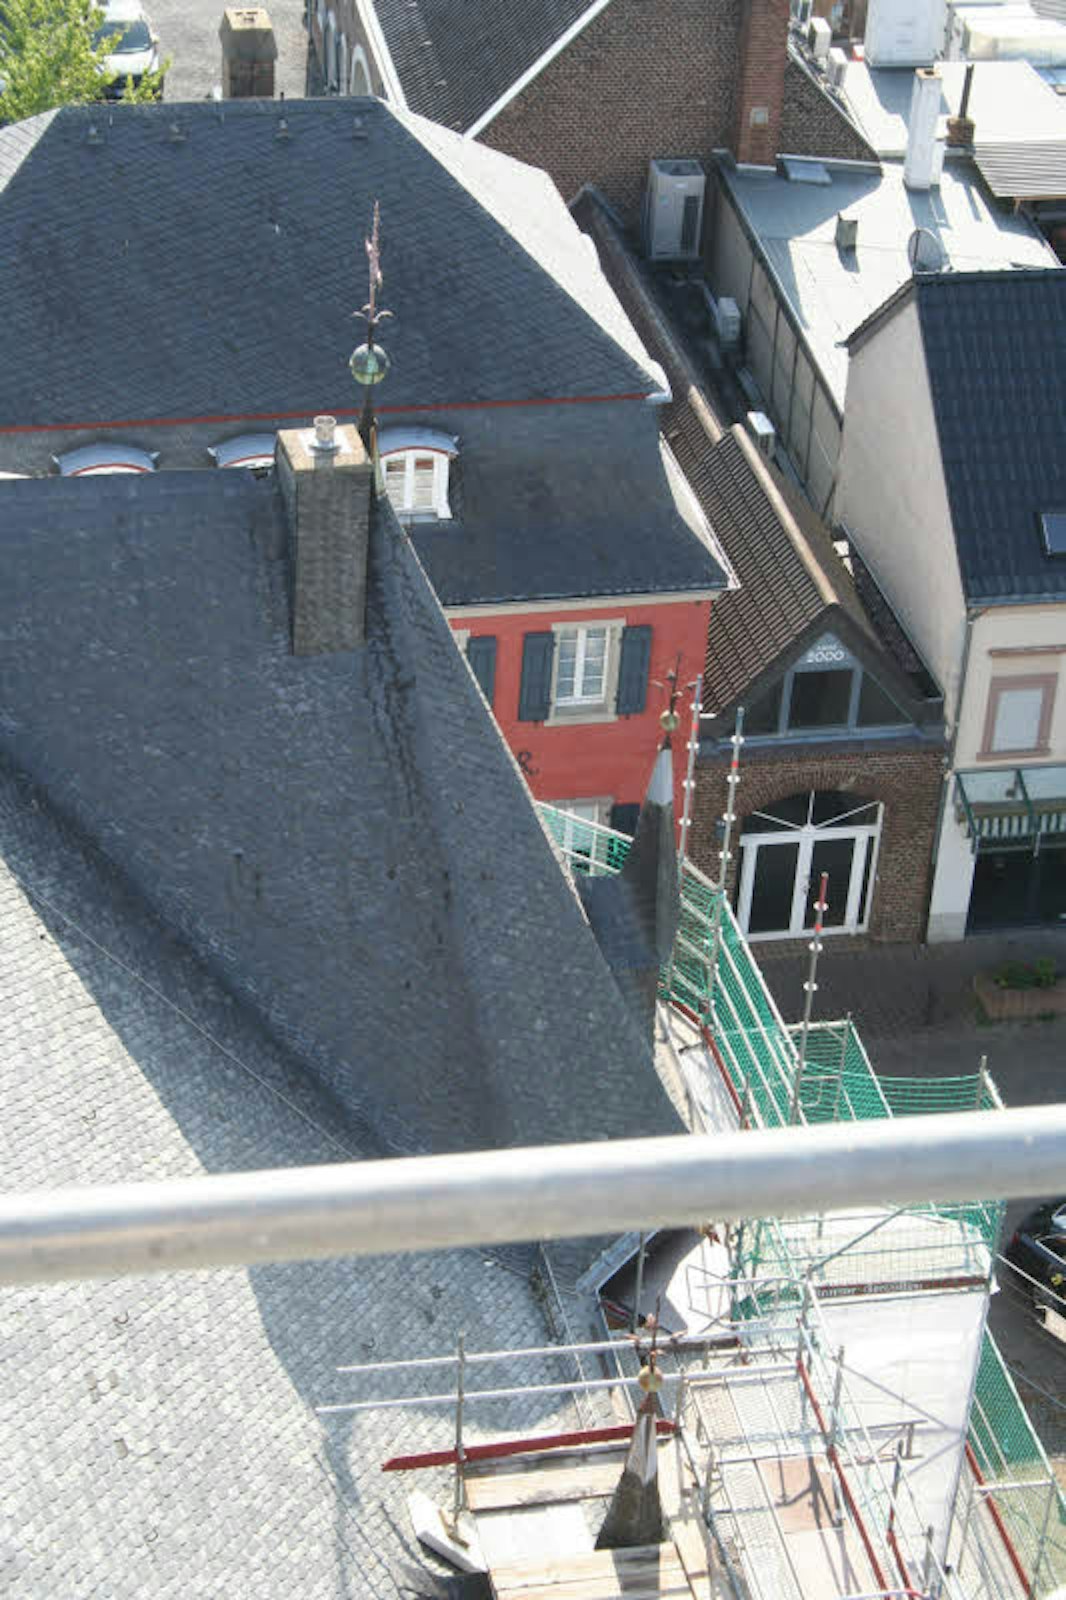 Der Blick übers Kirchendach Richtung Husarenquartier.